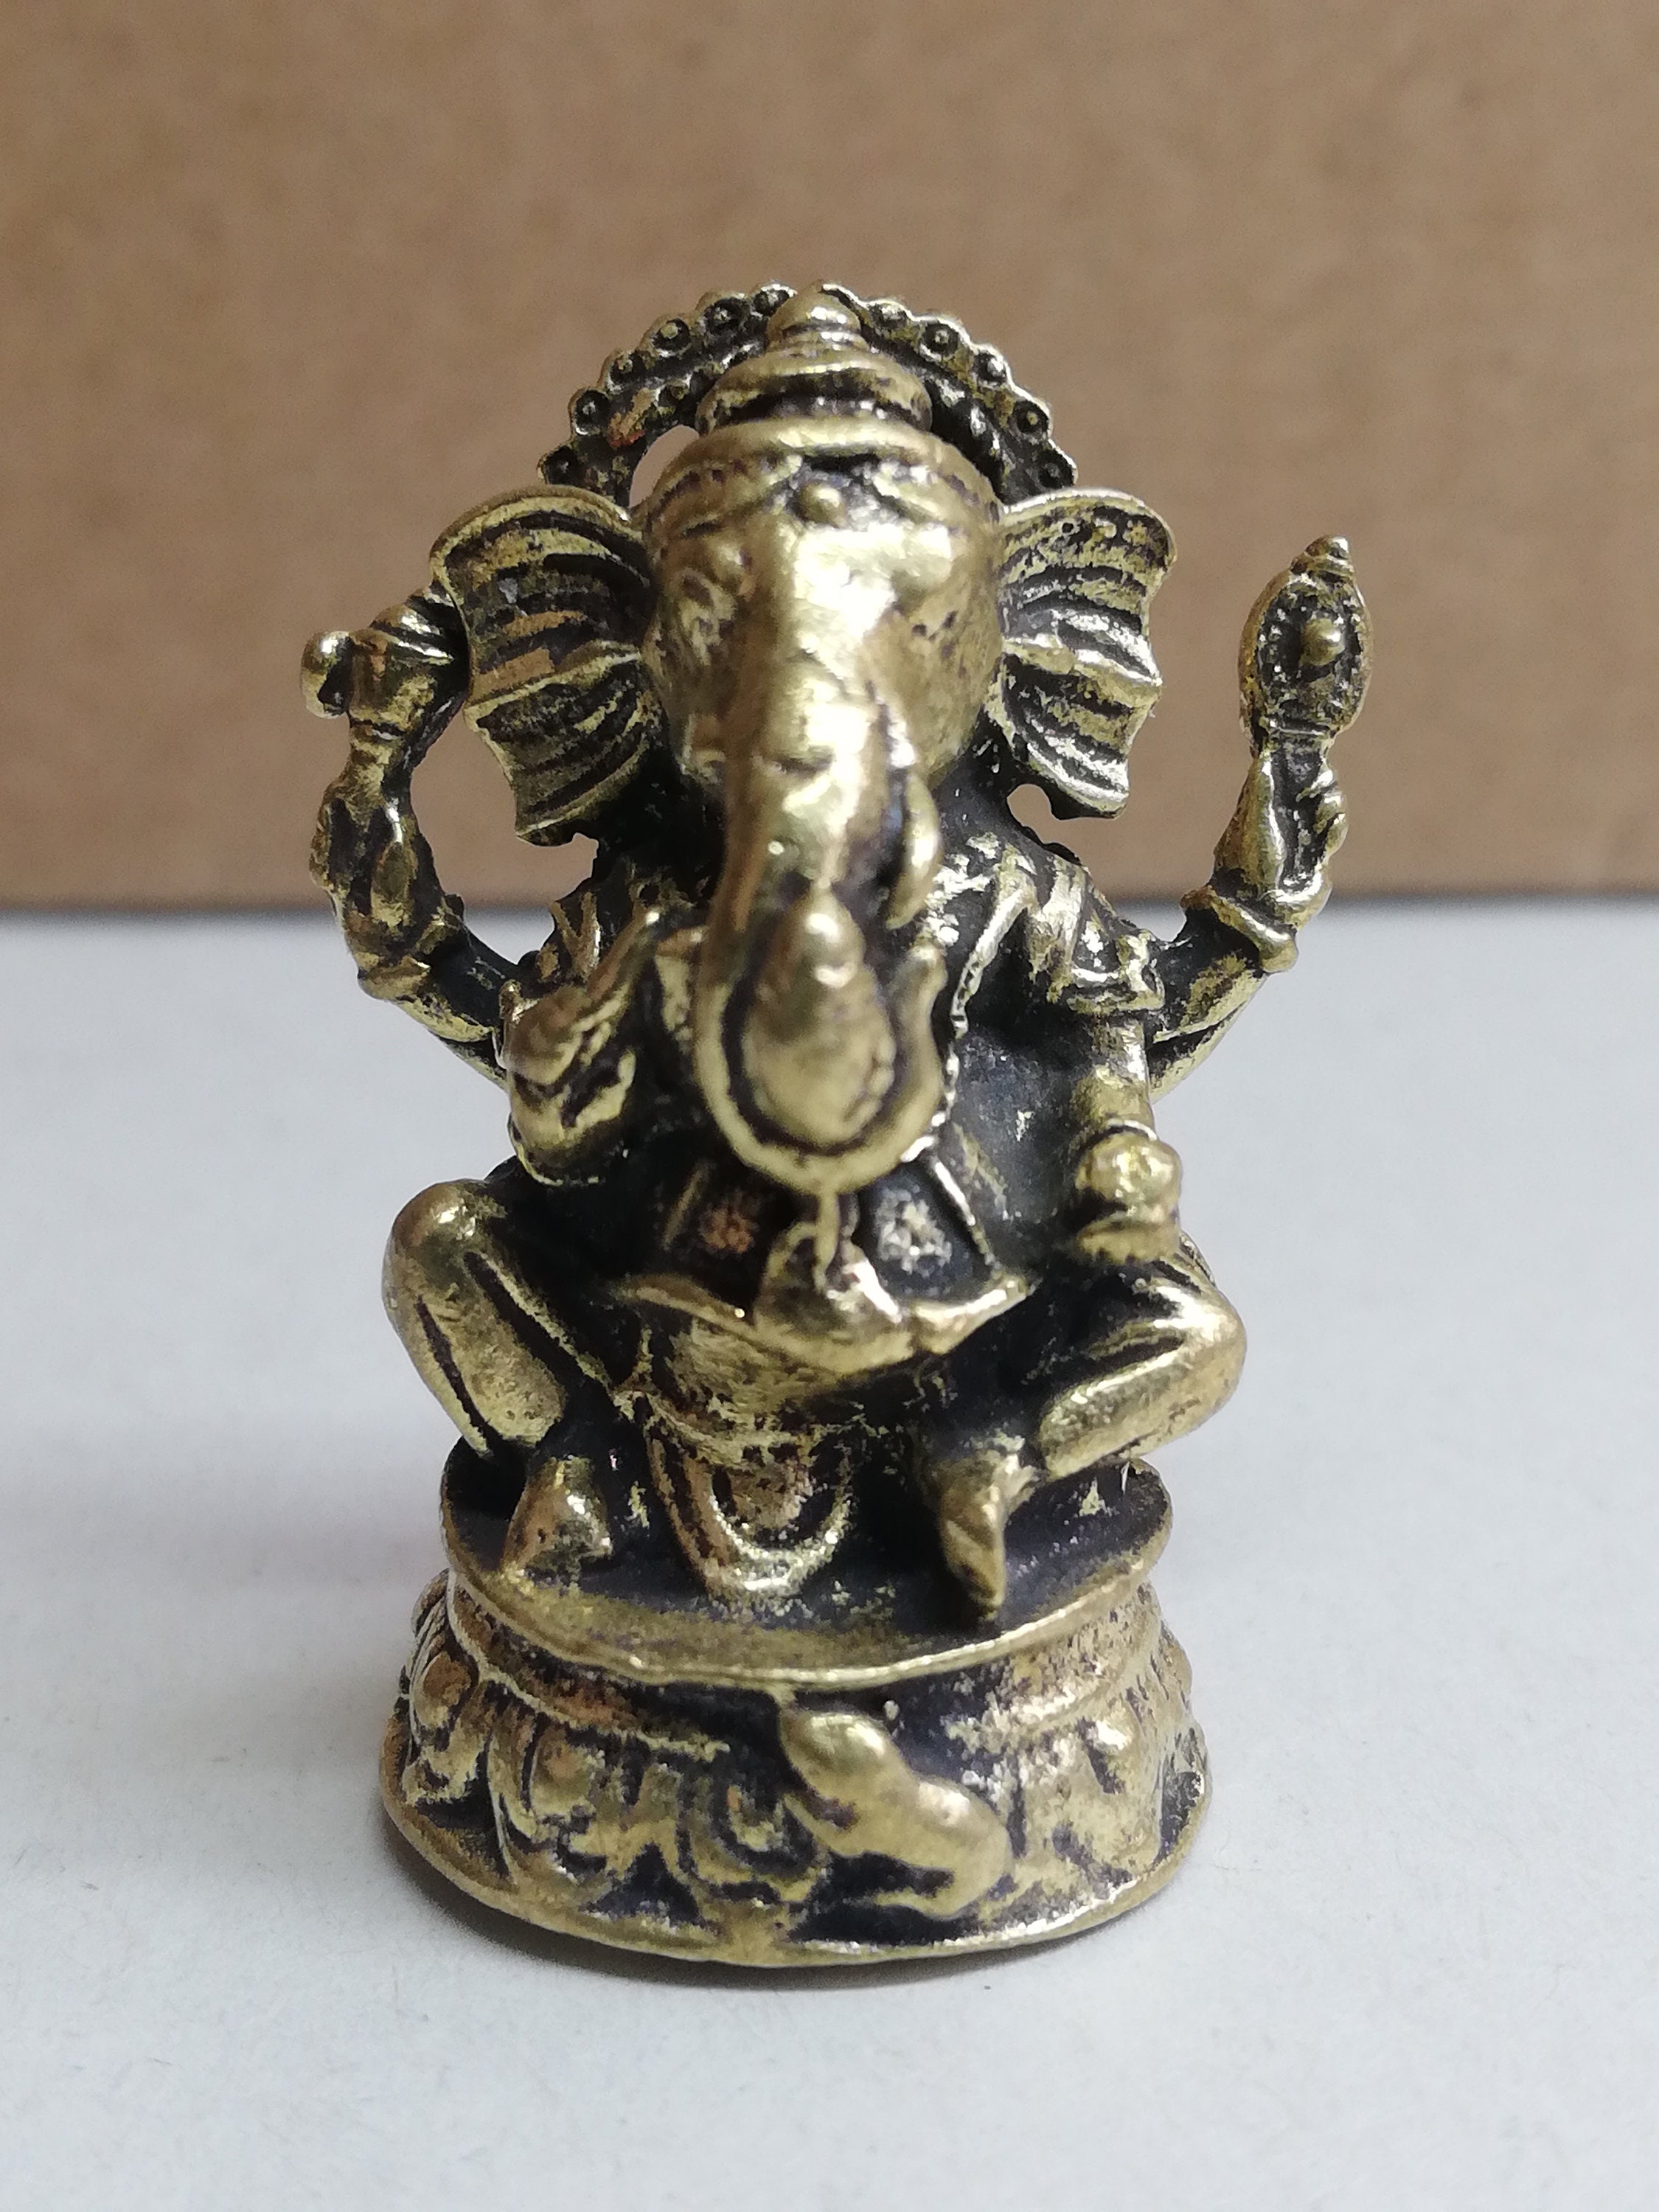 Small Ganesha Statue. Metal Ornament of Ganesh. Miniature | Etsy